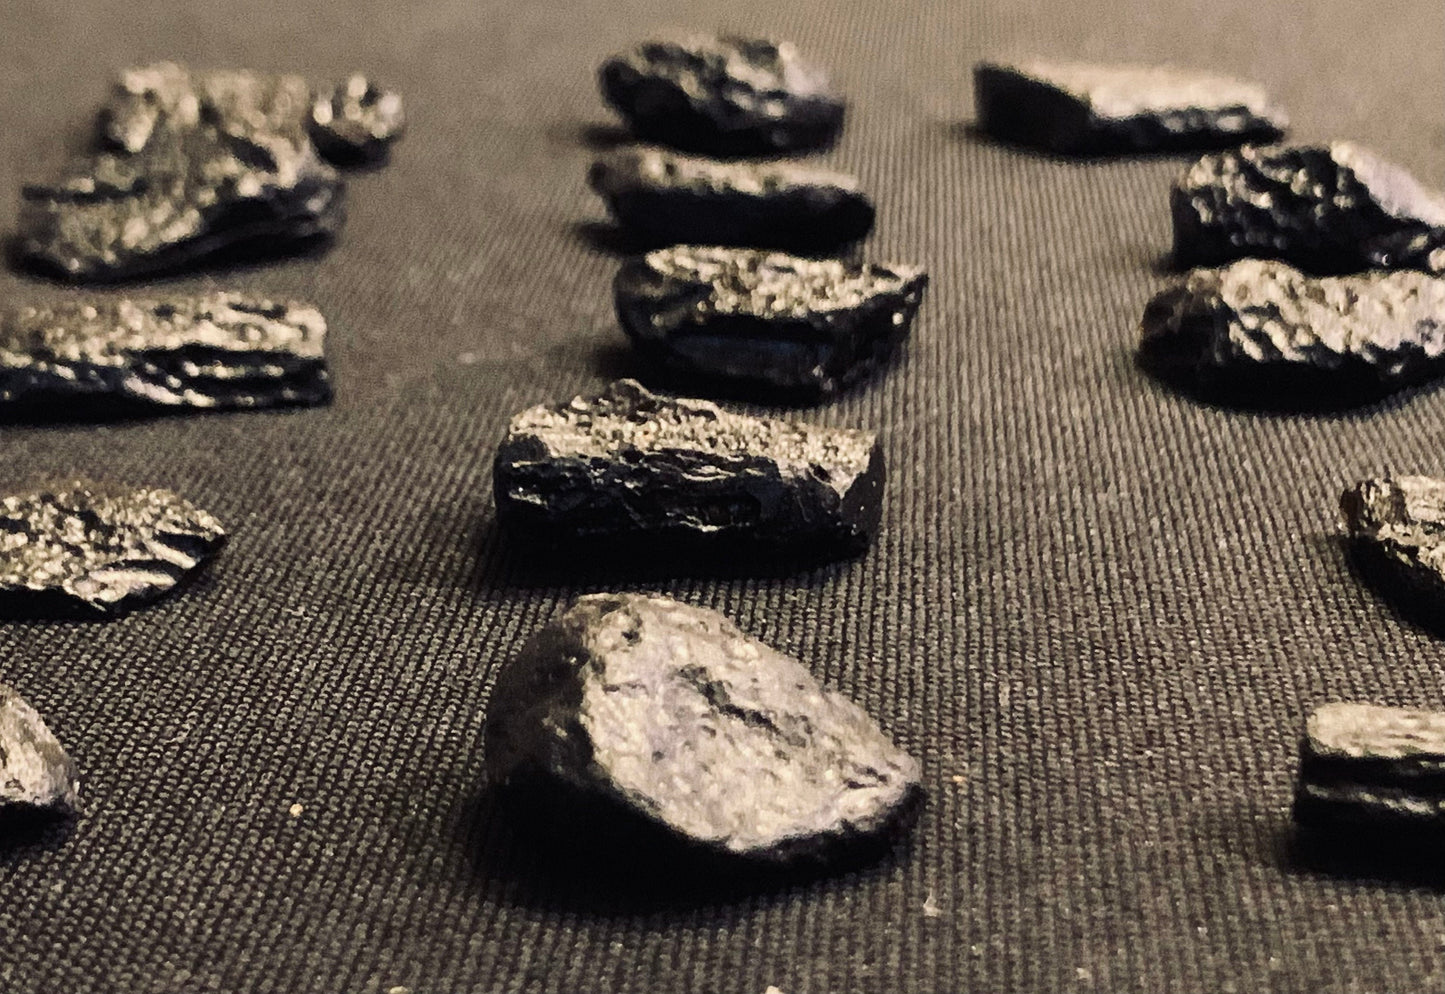 Tibetan Tektite Meteorite